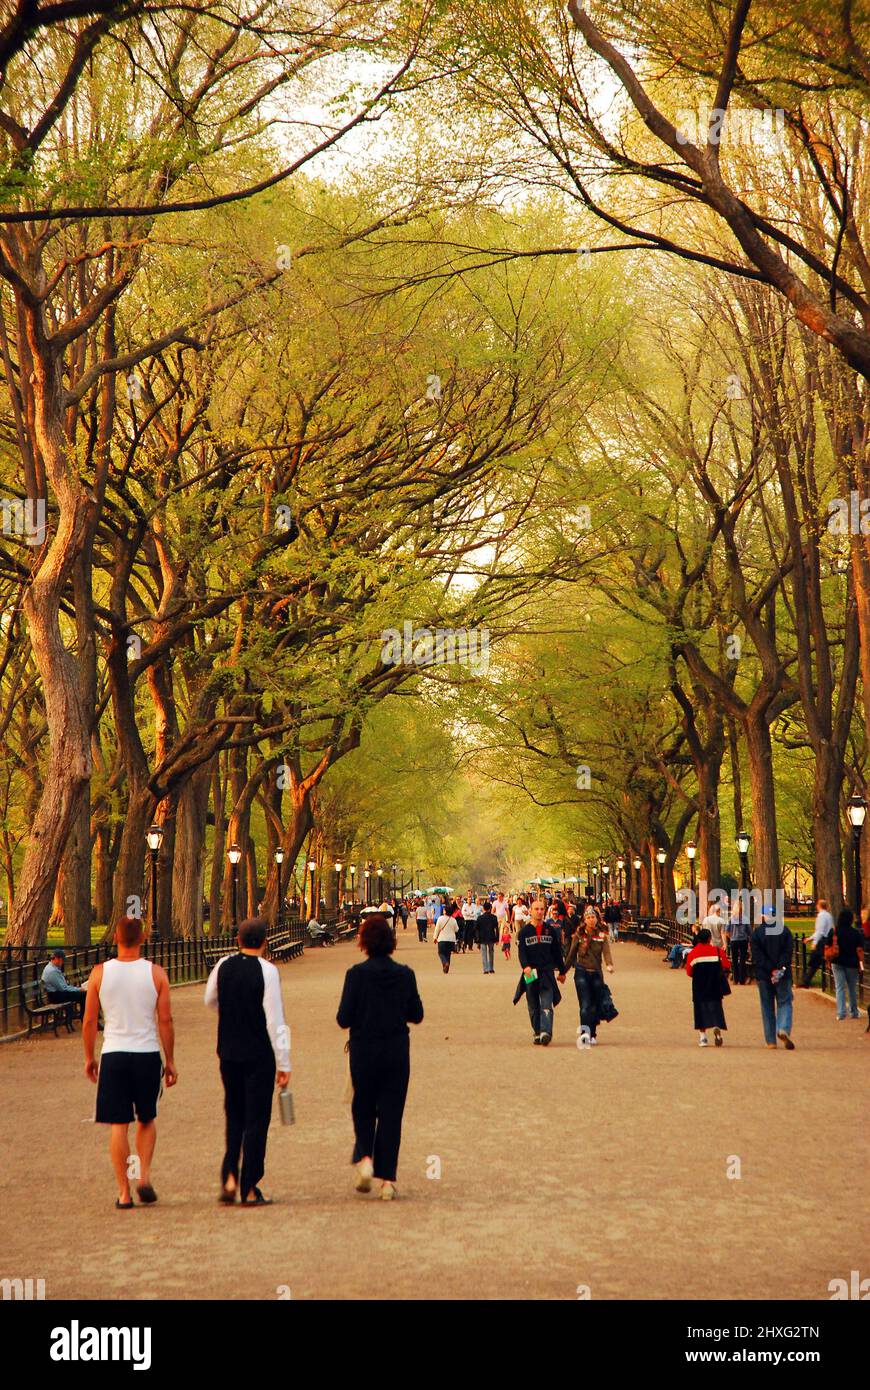 Die Menschen genießen einen Frühlingstag, wenn sie in der Mall im New Yorker Central Park spazieren gehen Stockfoto